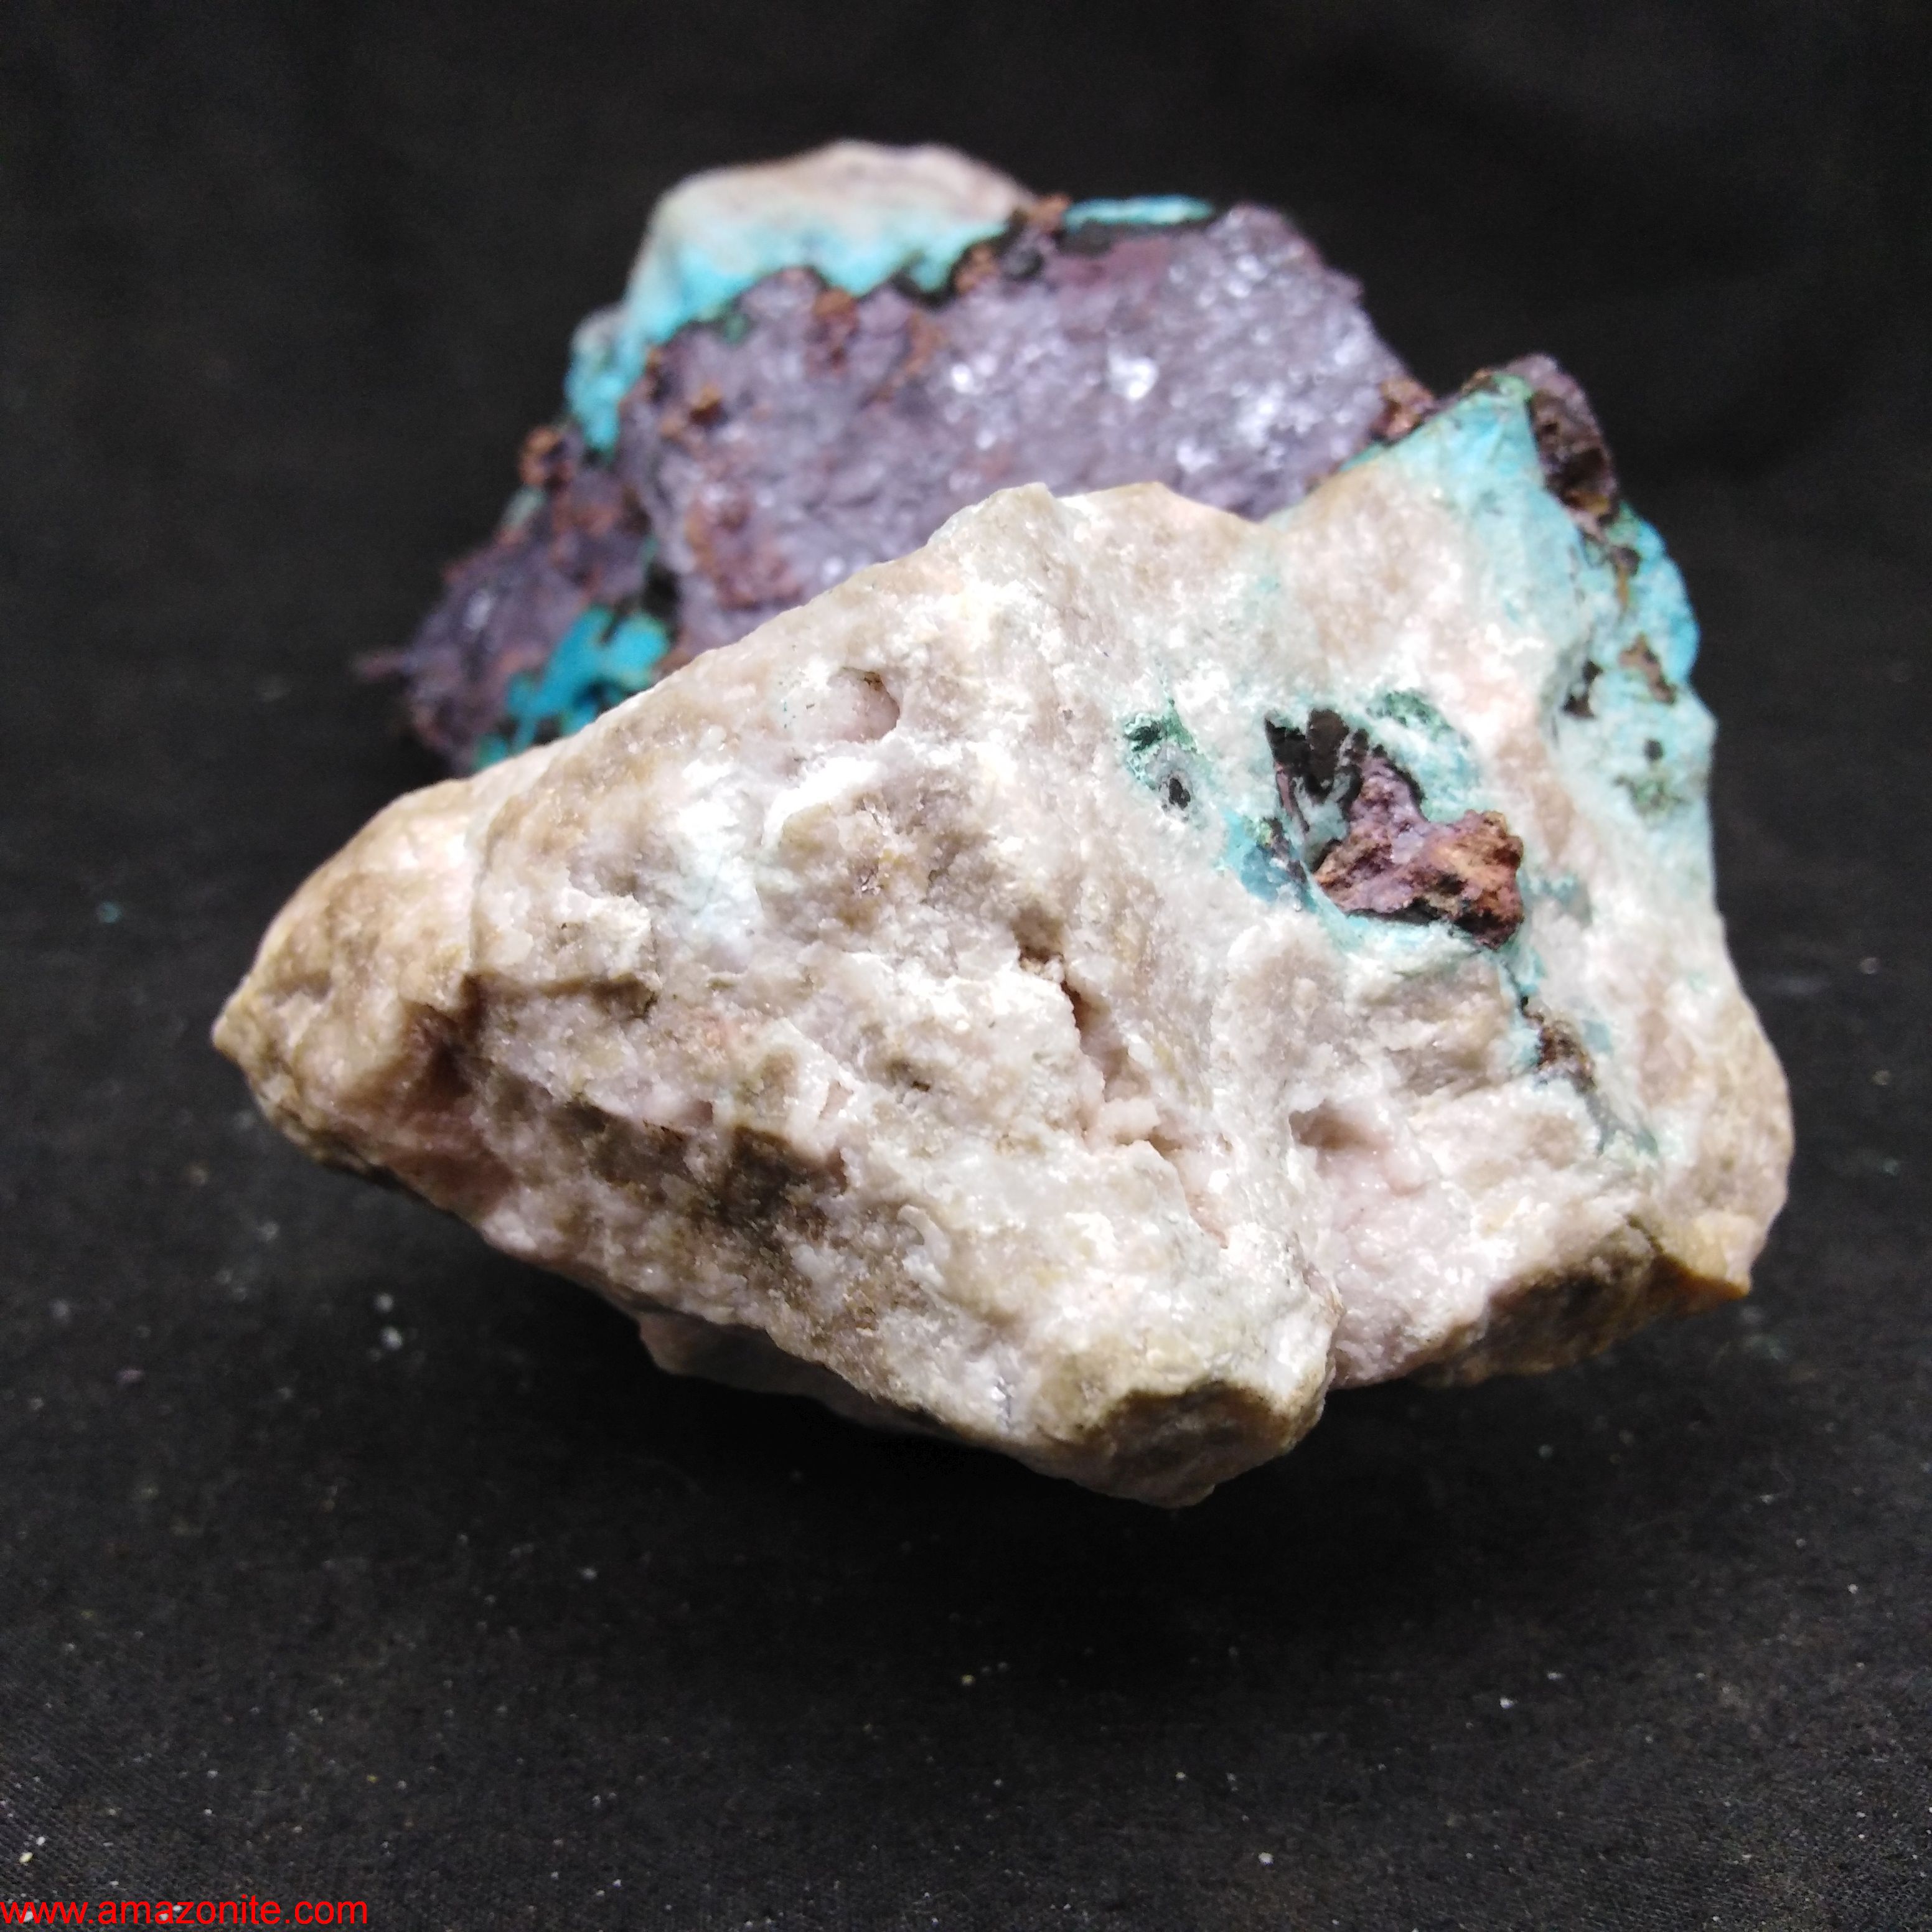 Copper/Chrysocolla Mineral Specimen From Congo » amazonite.com